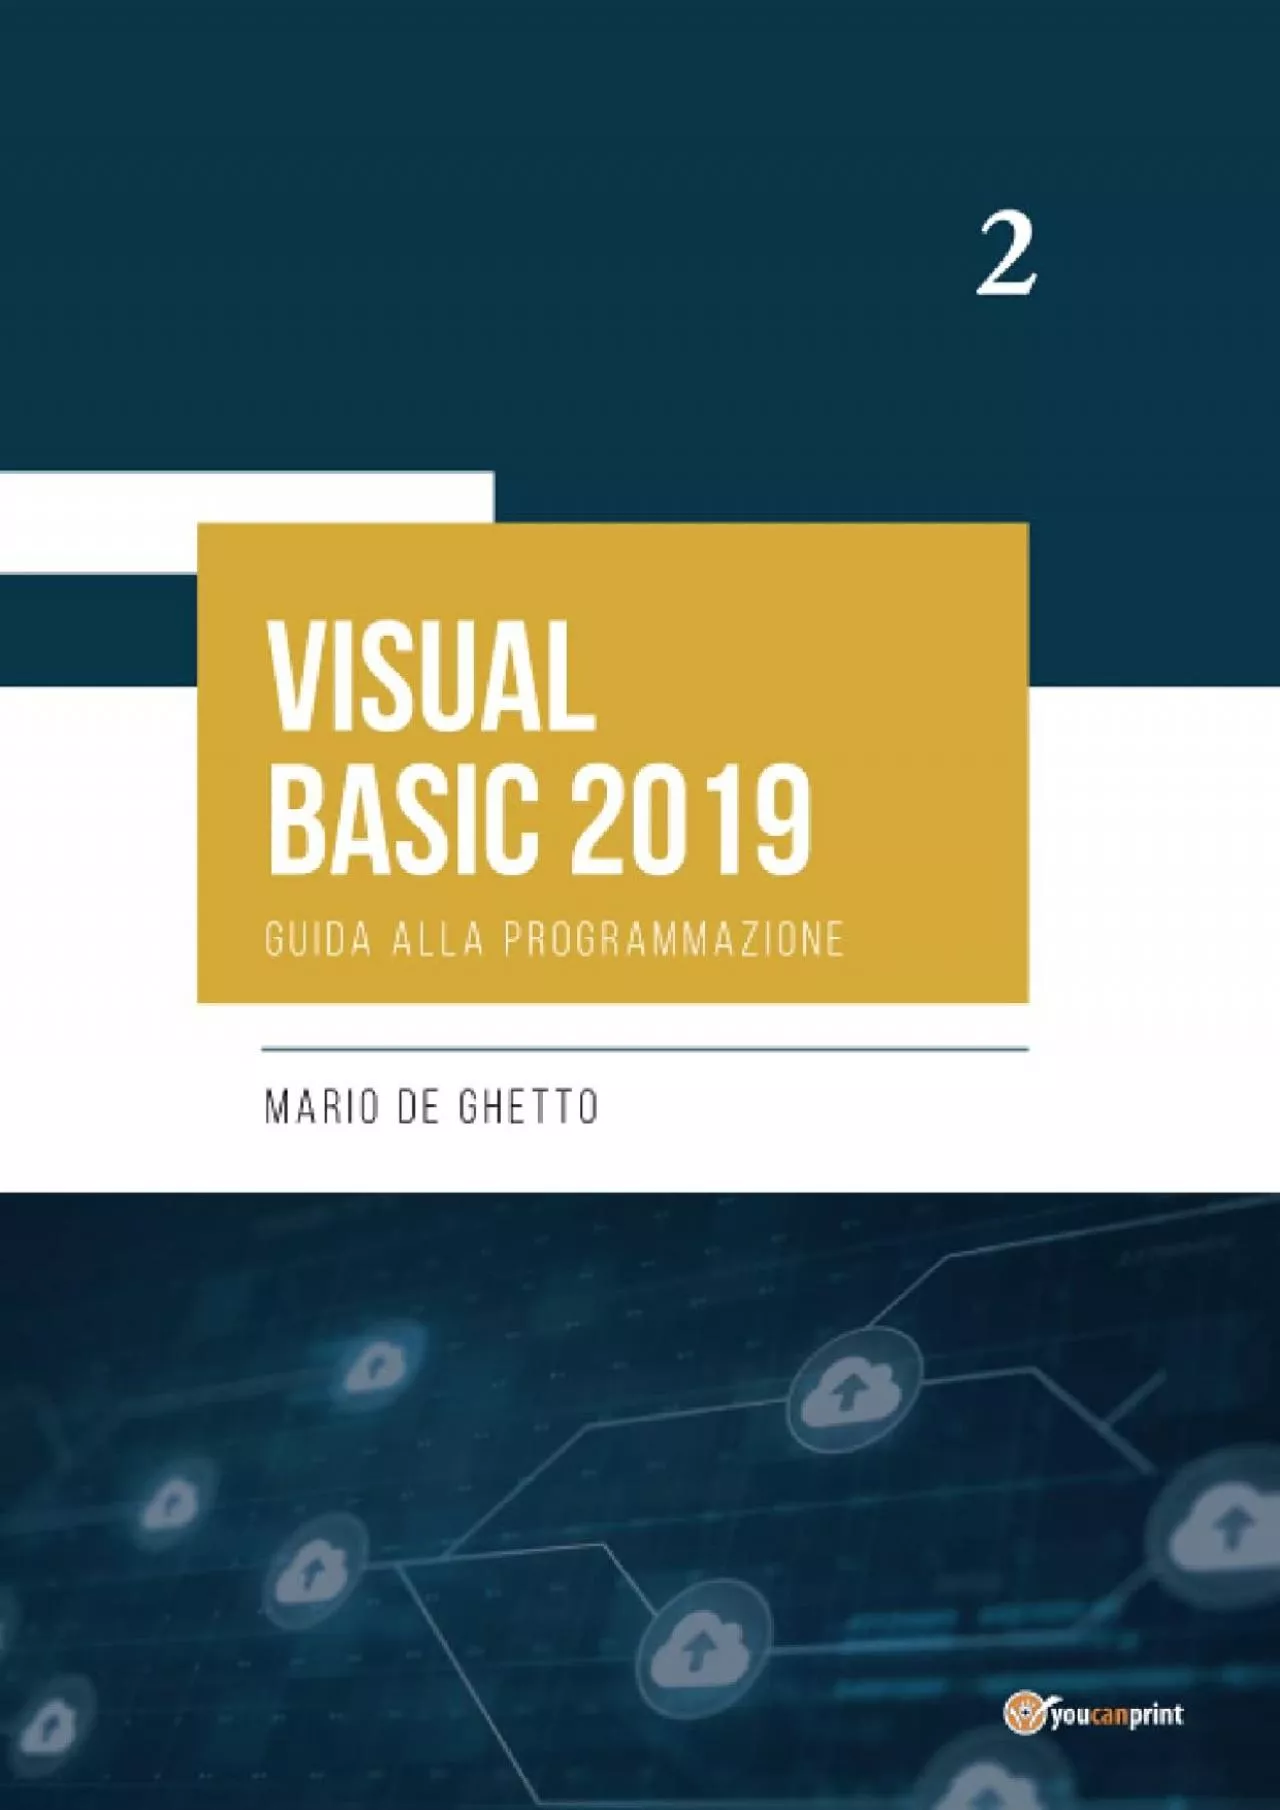 [FREE]-VISUAL BASIC 2019 - Guida alla programmazione (Italian Edition)